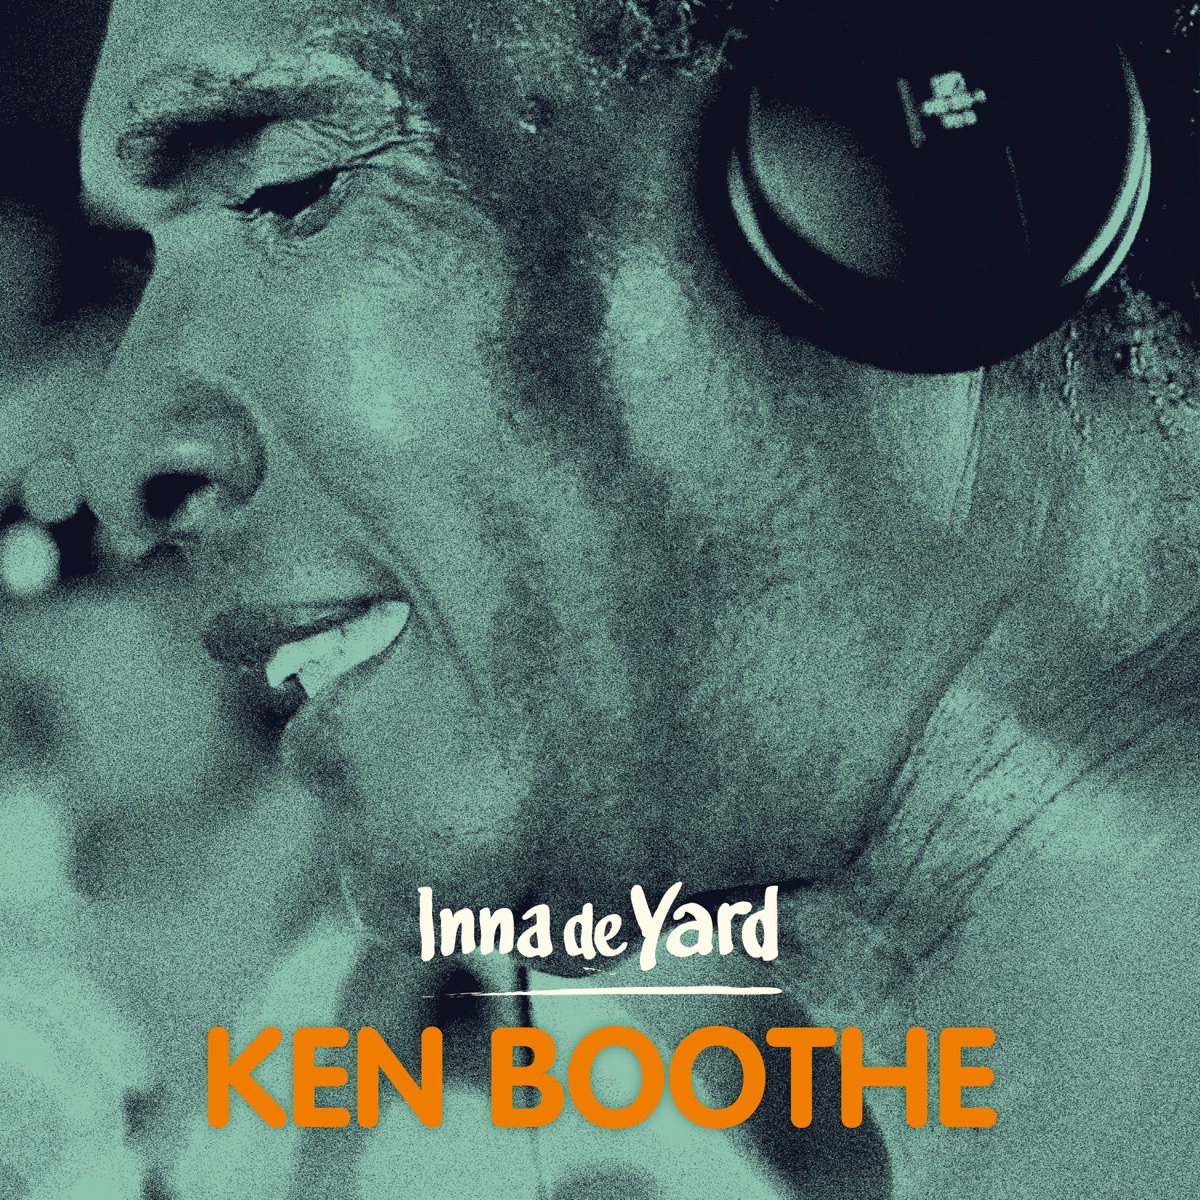 Inna de Yard   Album by Ken Boothe   Apple Music